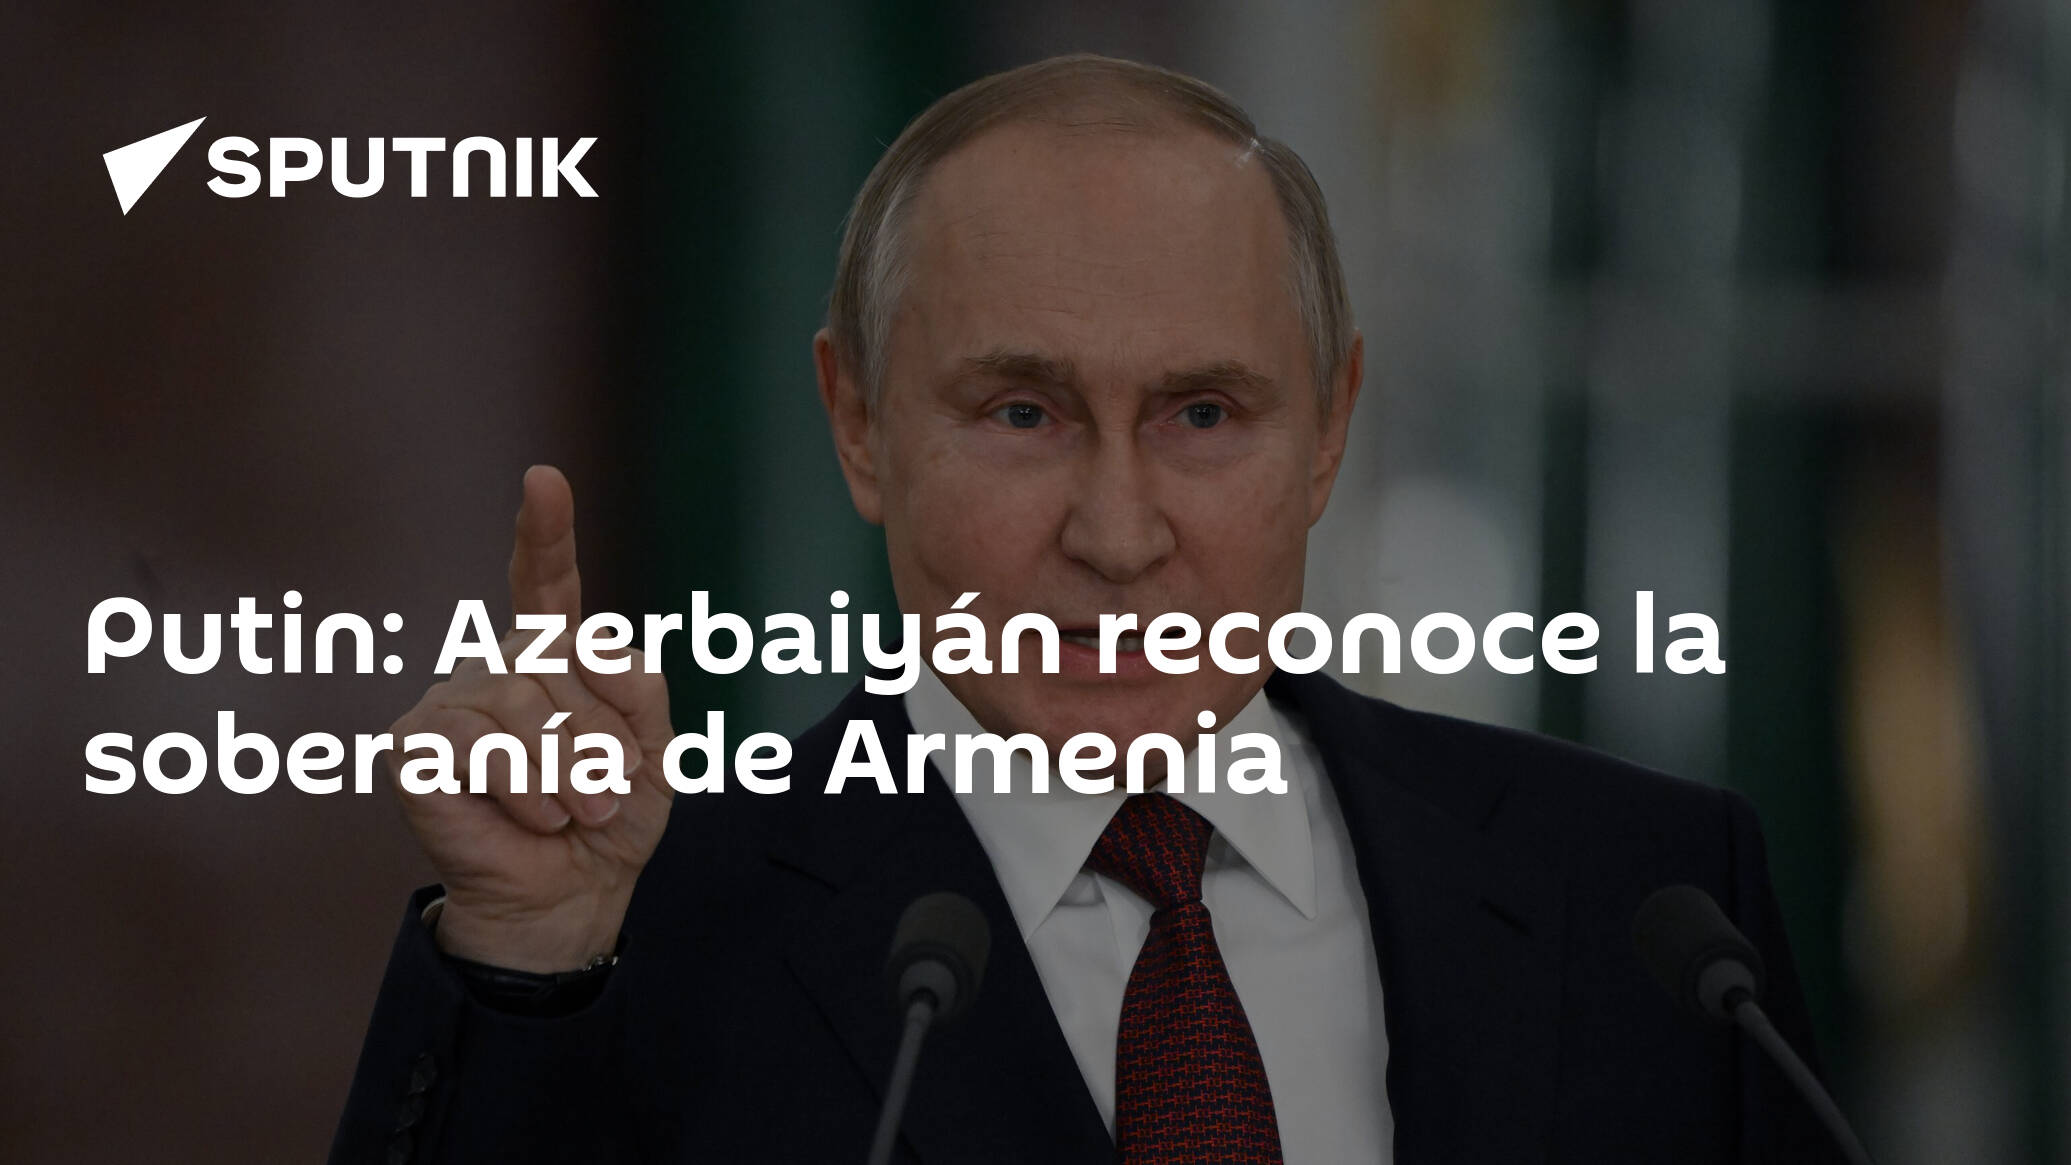 Putin: Aserbaidschan erkennt die Souveränität Armeniens an